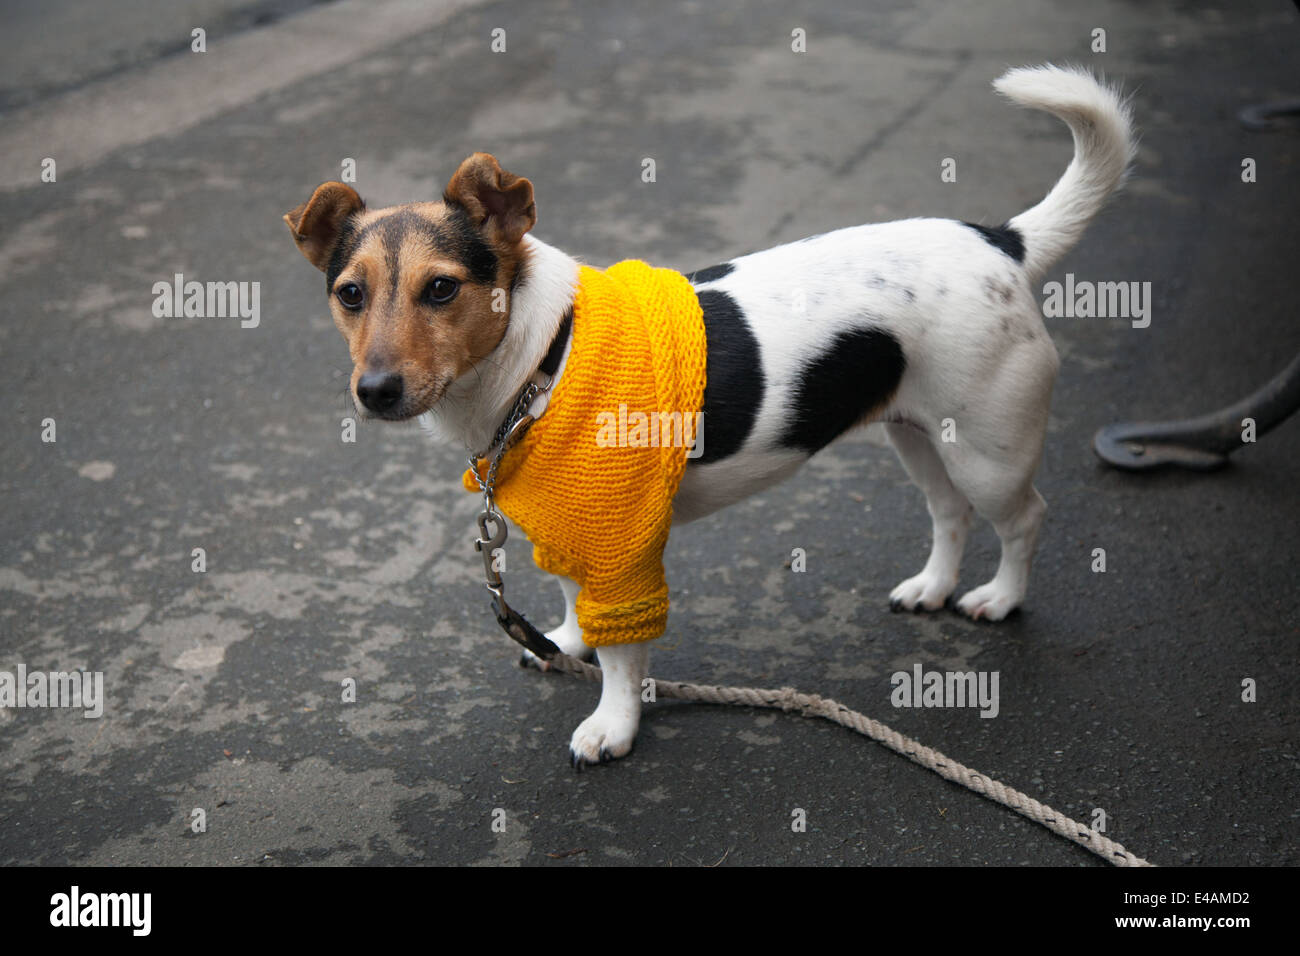 Tanfield, West Yorkshire, Royaume-Uni. 5 juillet, 2014. Jack Russell Terrier en jaune Tour de France de pontage. Banque D'Images